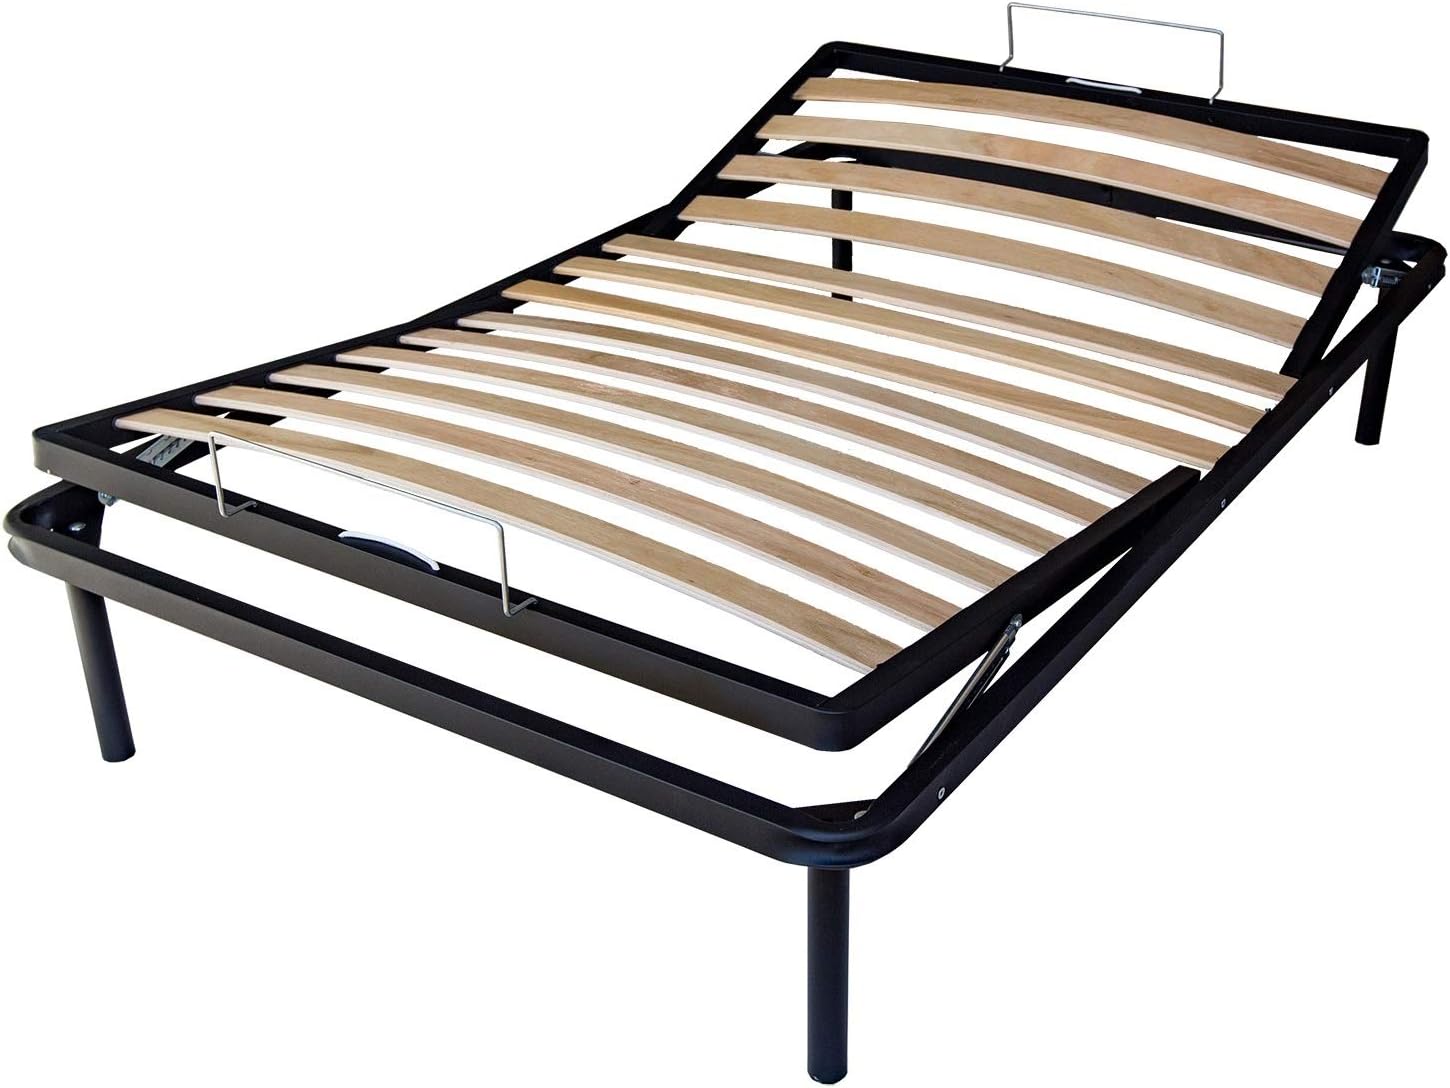 Rete letto ortopedica in legno reclinabile per letto una piazza e mezza  120x190 con alzata manuale testa e piedi - Comprarredo